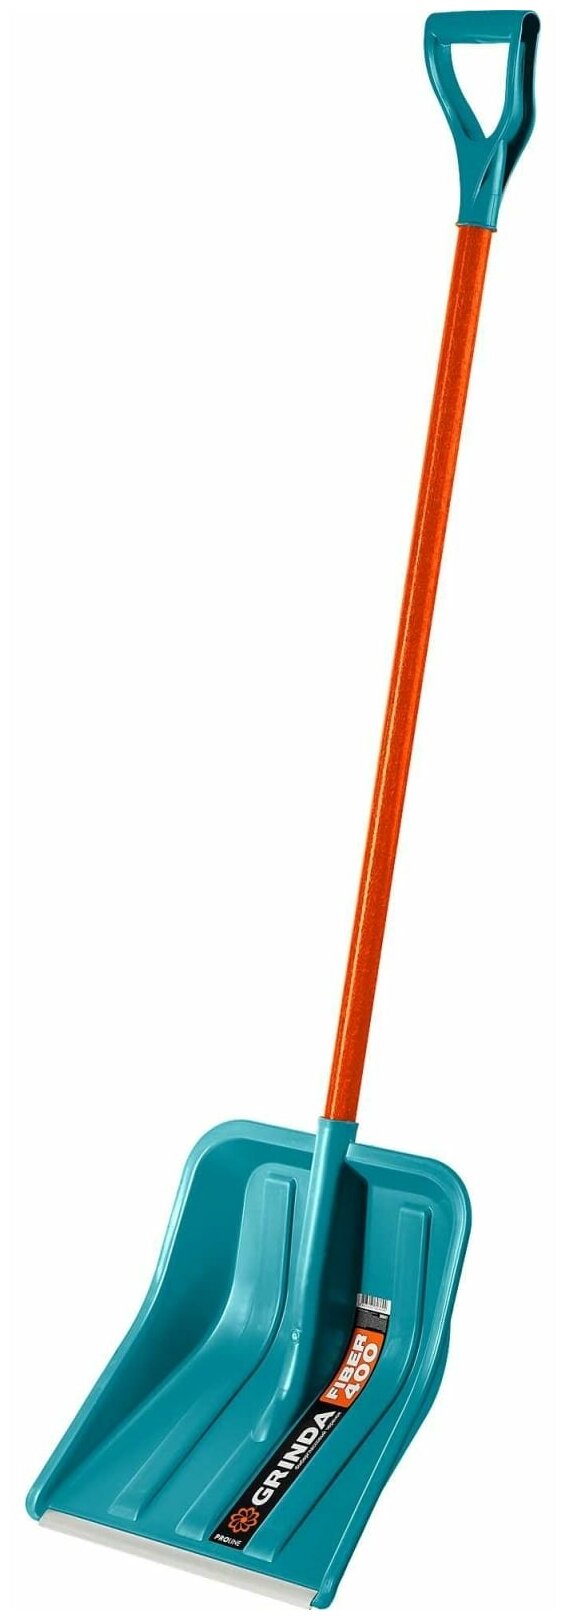 Снеговая лопата PROLine FIBER-400 400 мм пластиковая с алюминиевой планкой особопрочный легкий черенок из фибергласса V-ручка GRINDA 39941